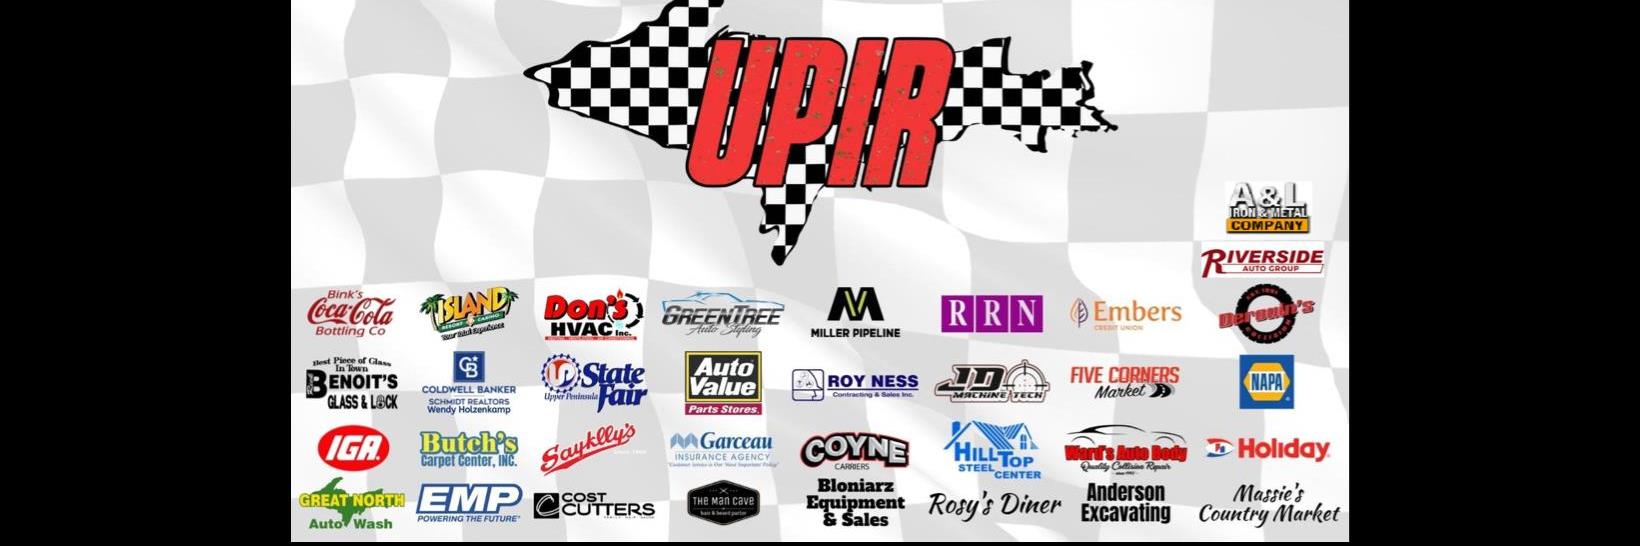 6/5/2022 - Upper Peninsula International Raceway